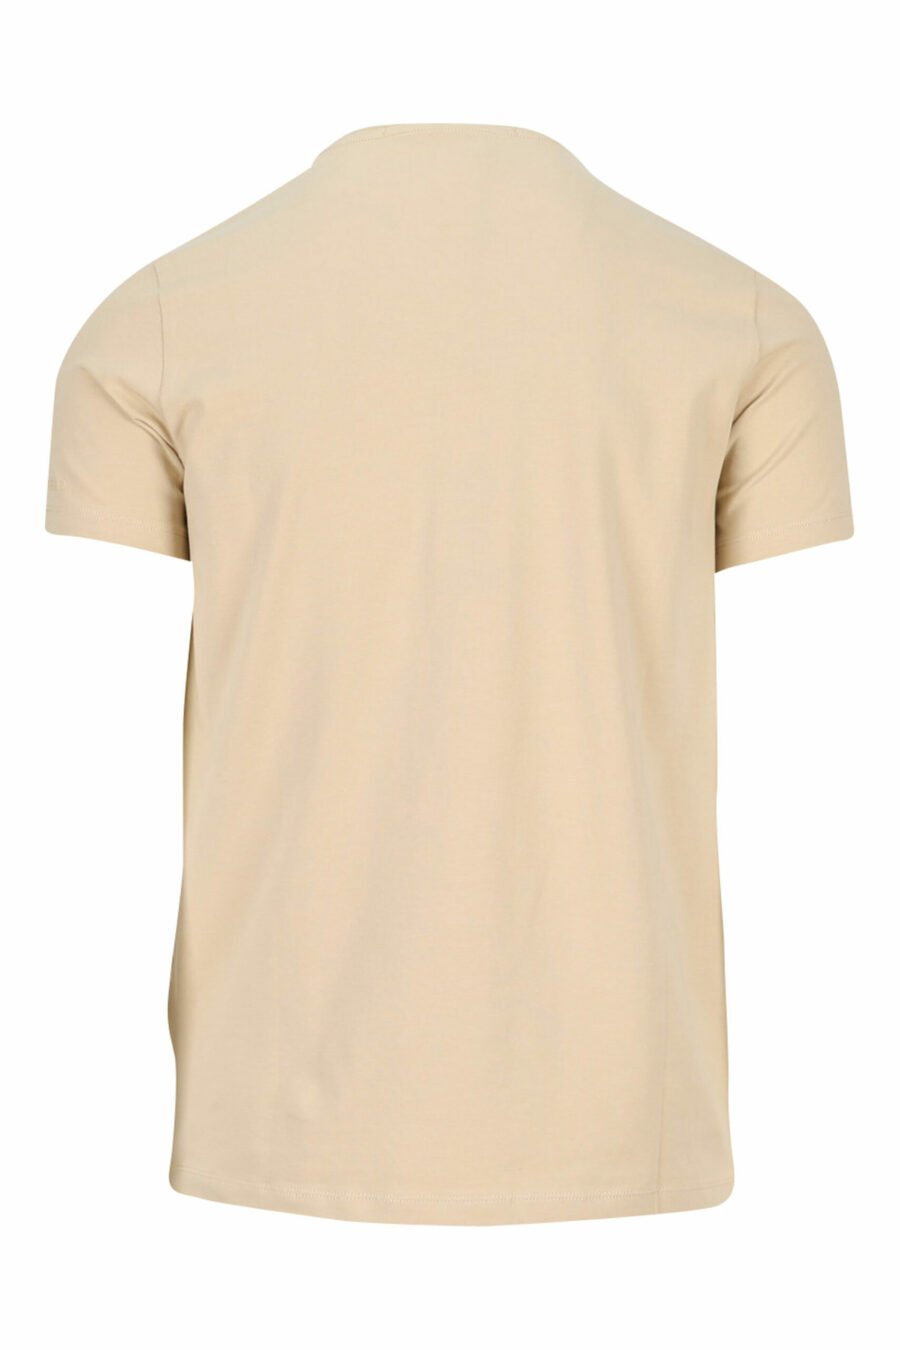 T-shirt bege com maxilogo monocromático em borracha - 4062226401340 1 scaled